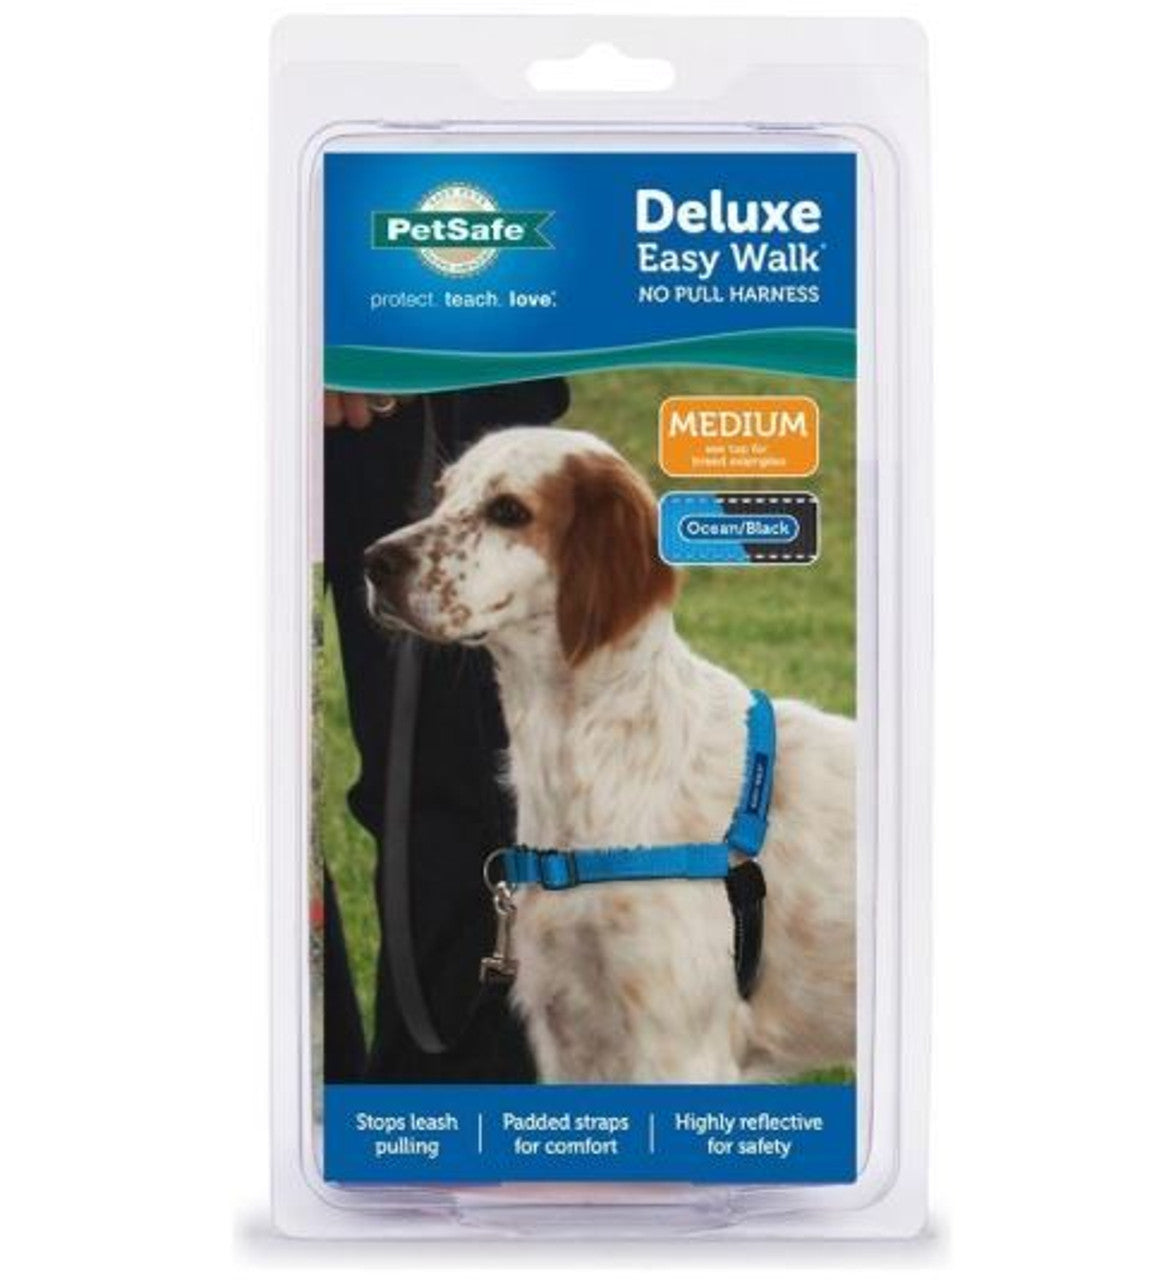 Deluxe easy walk harness medium